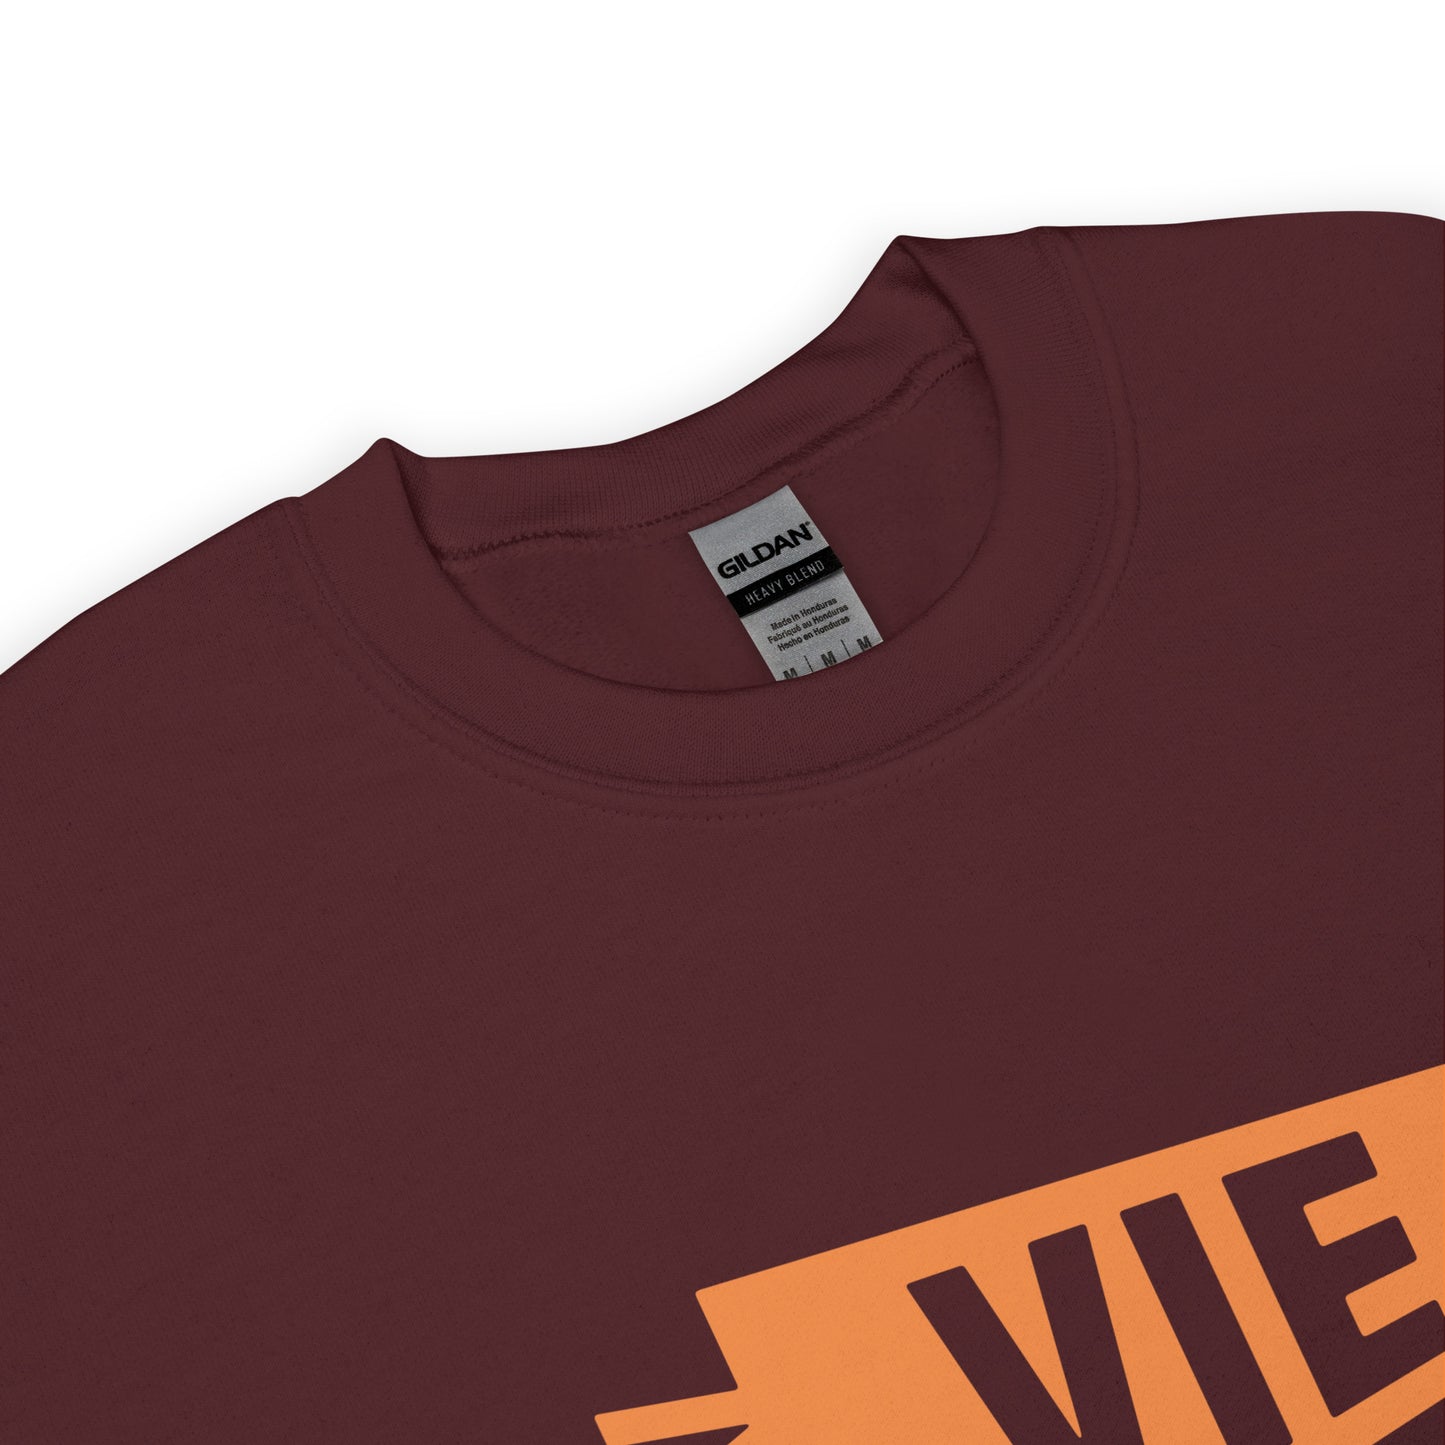 Airport Code Sweatshirt - Orange Graphic • VIE Vienna • YHM Designs - Image 04